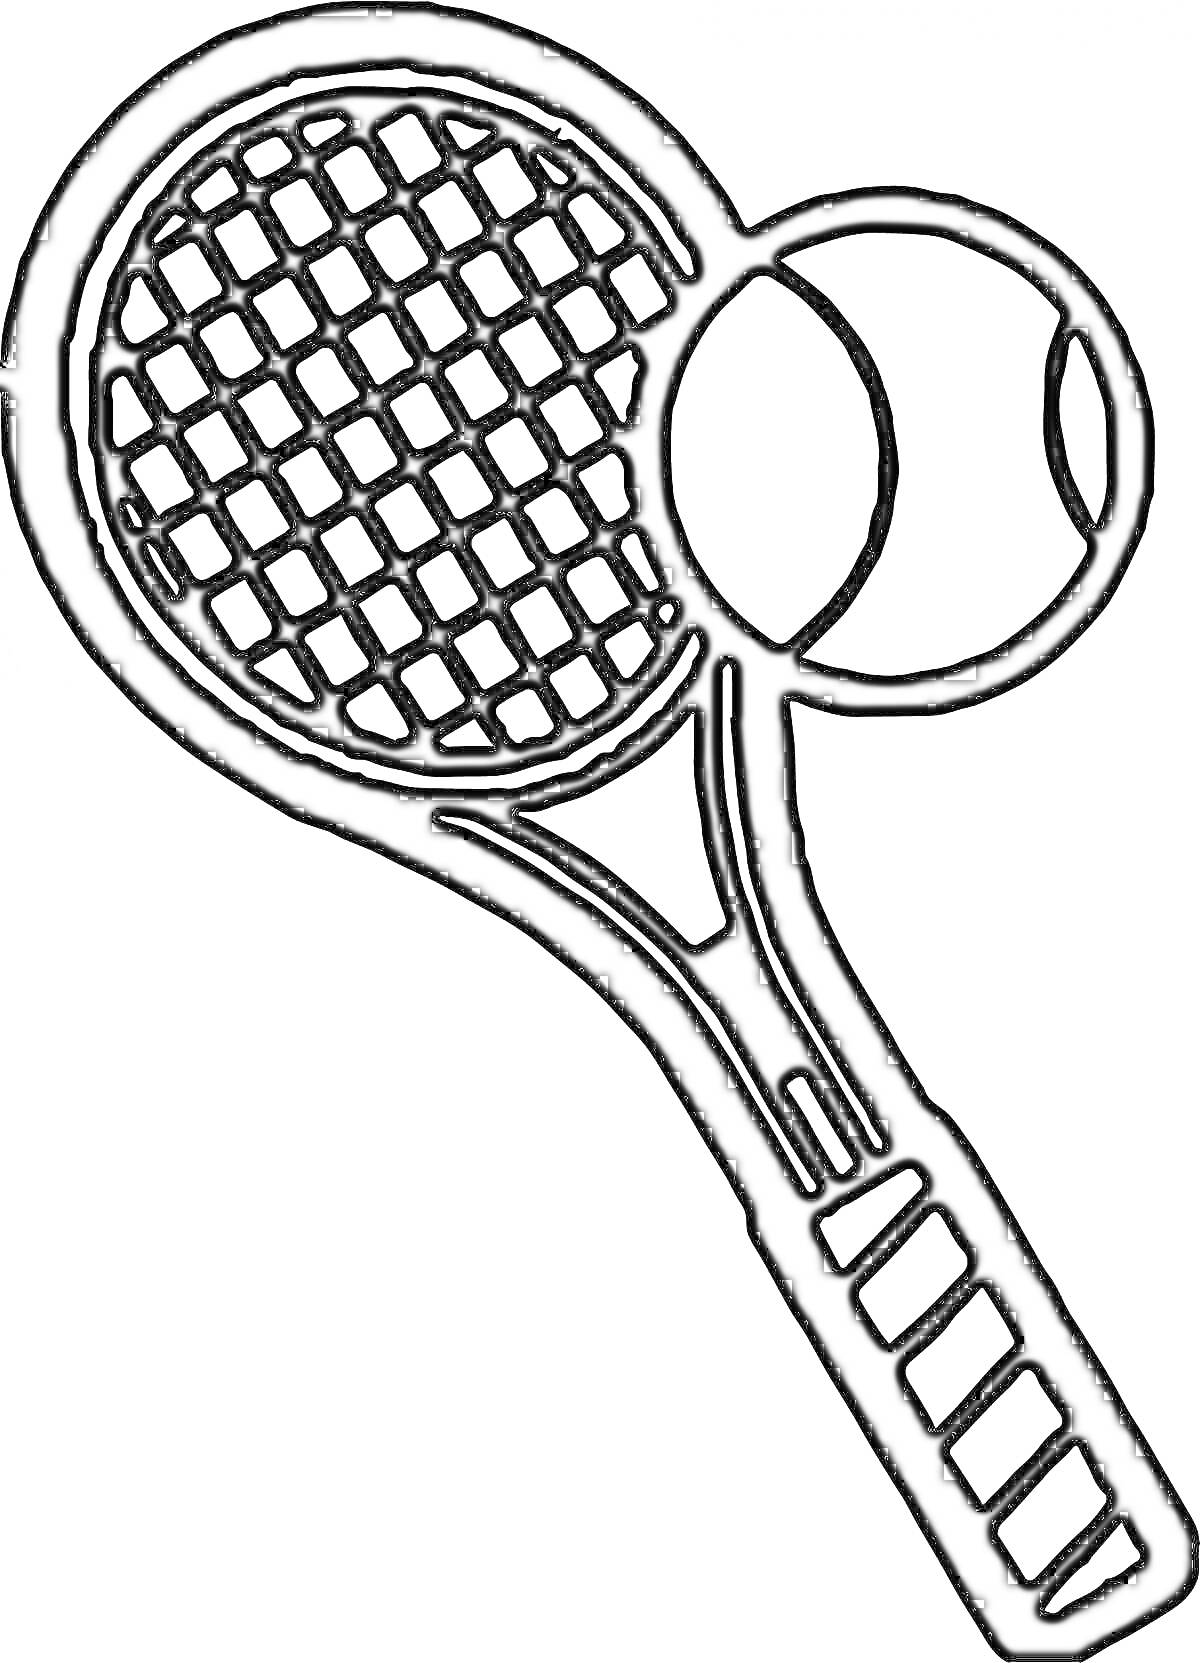 Раскраска Теннисная ракетка с теннисным мячом